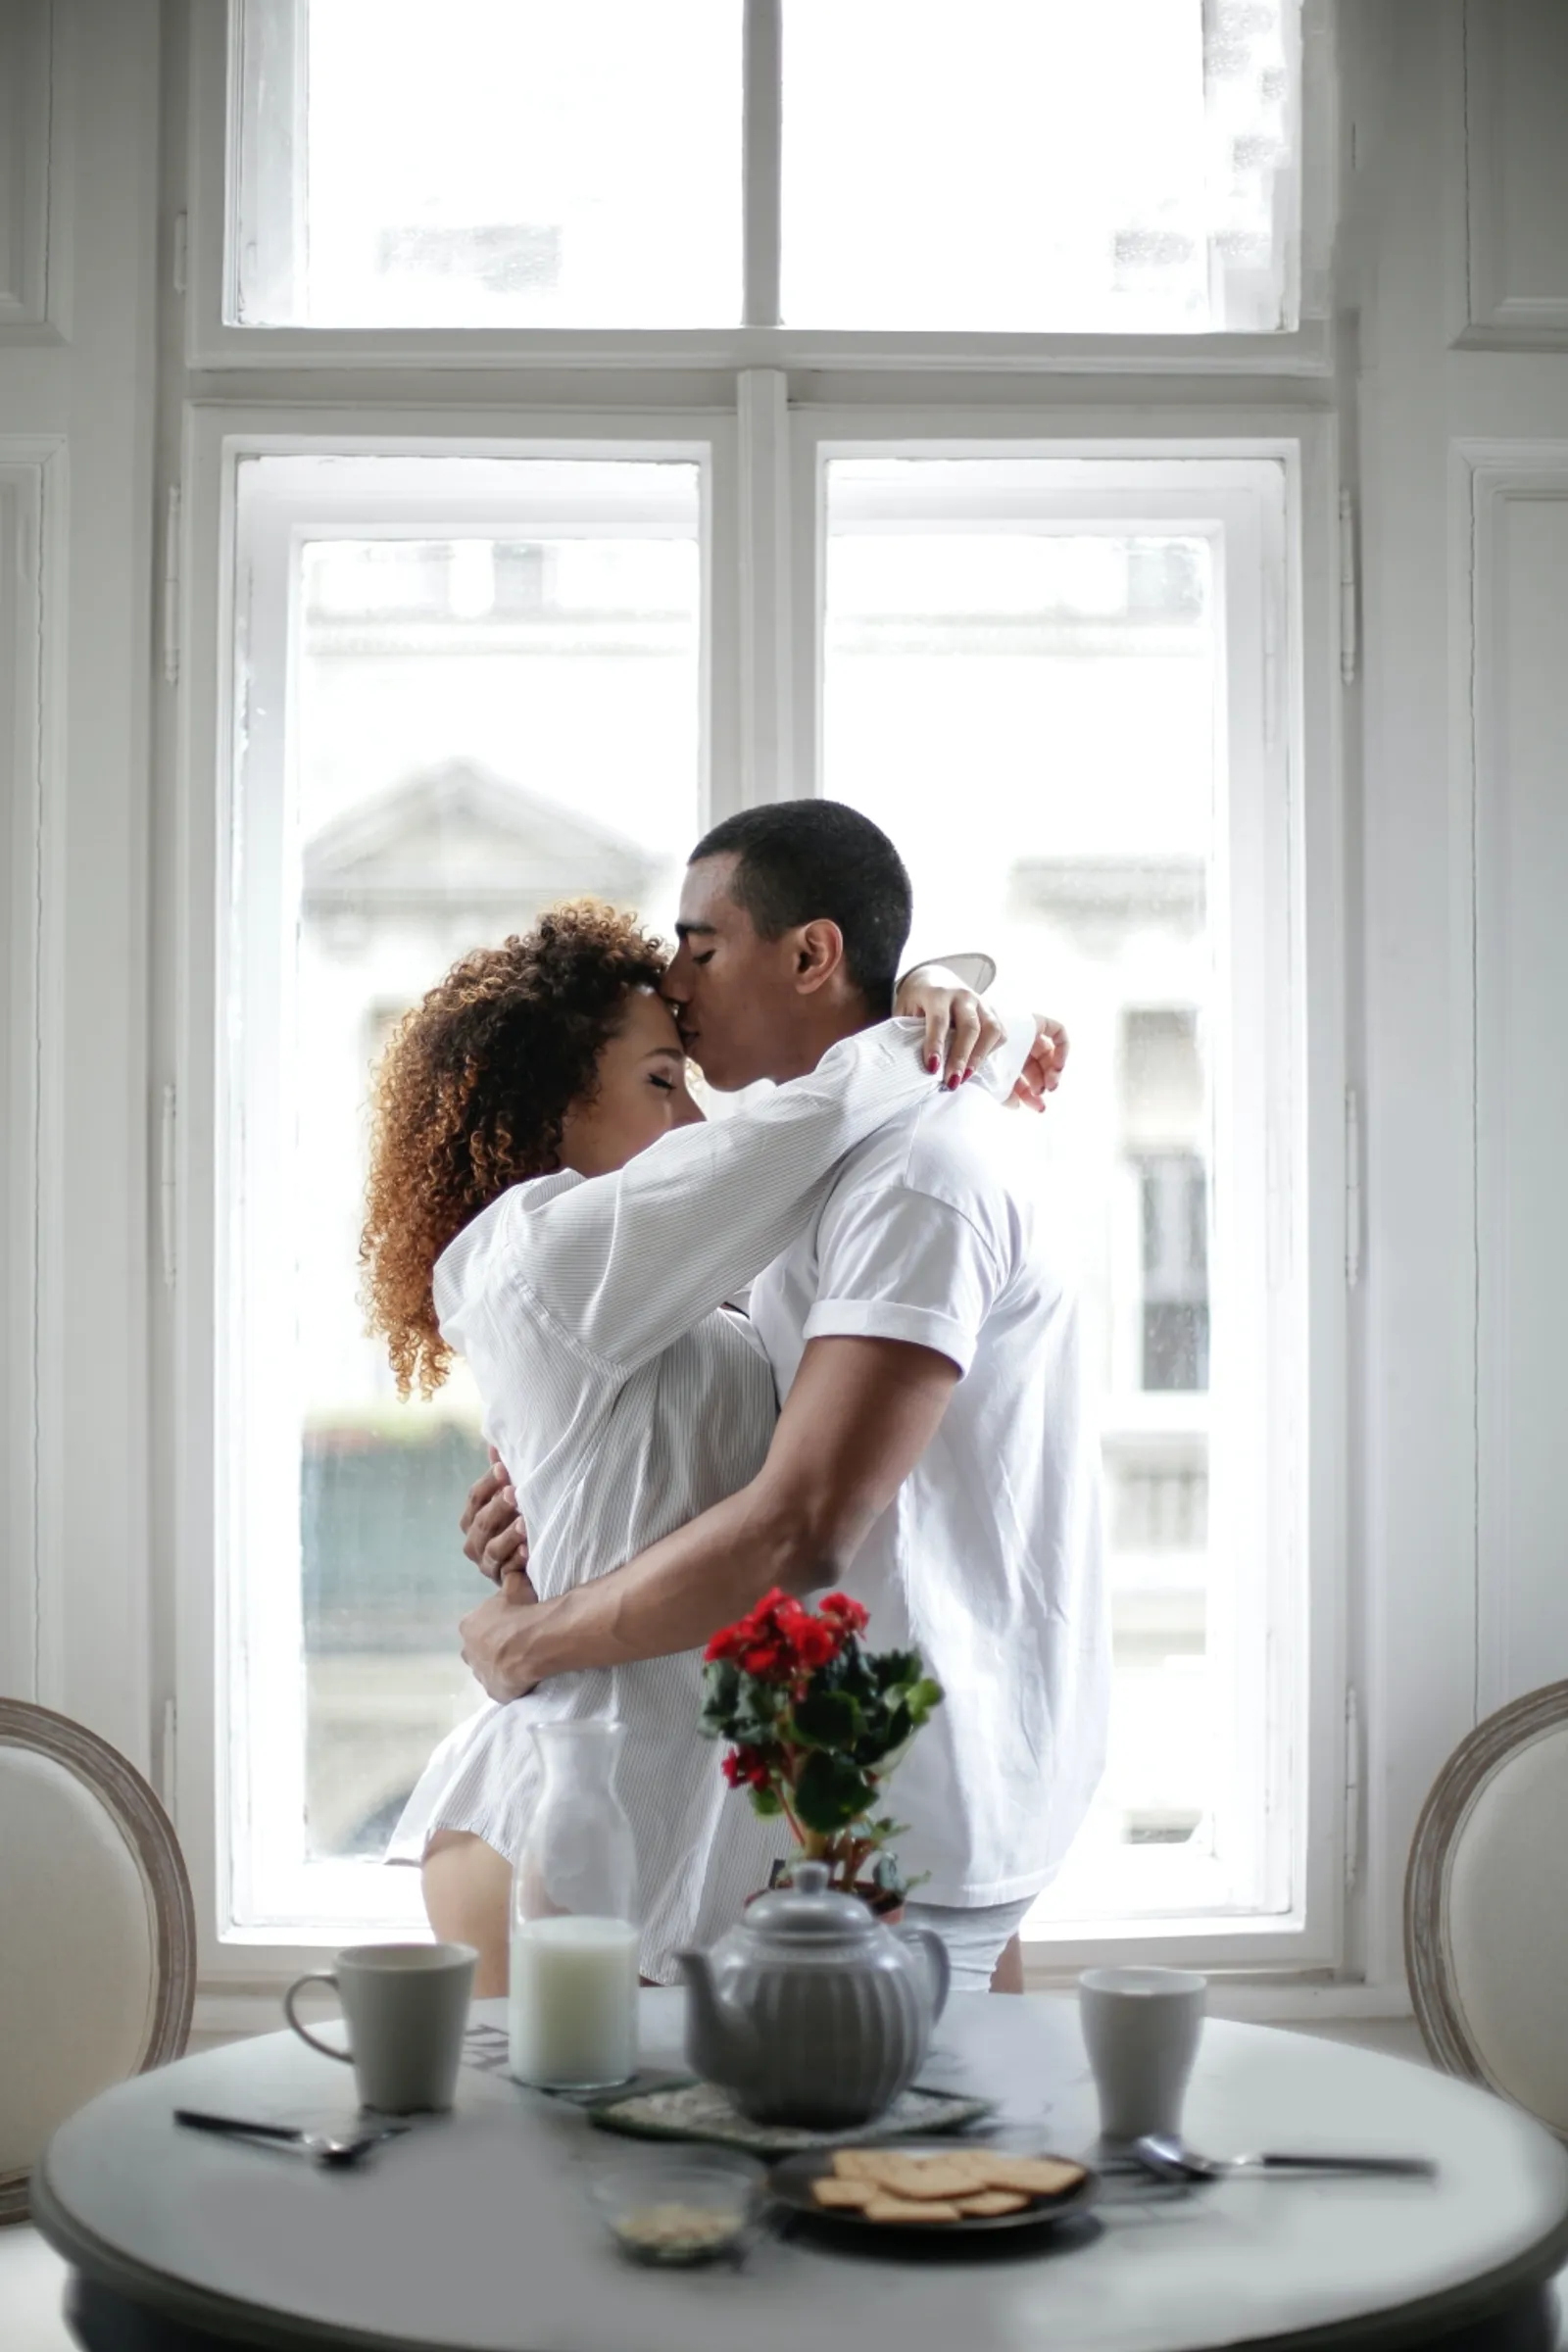 Simak 11 Nasihat Pernikahan Ini Agar Langgeng Sampai Tua